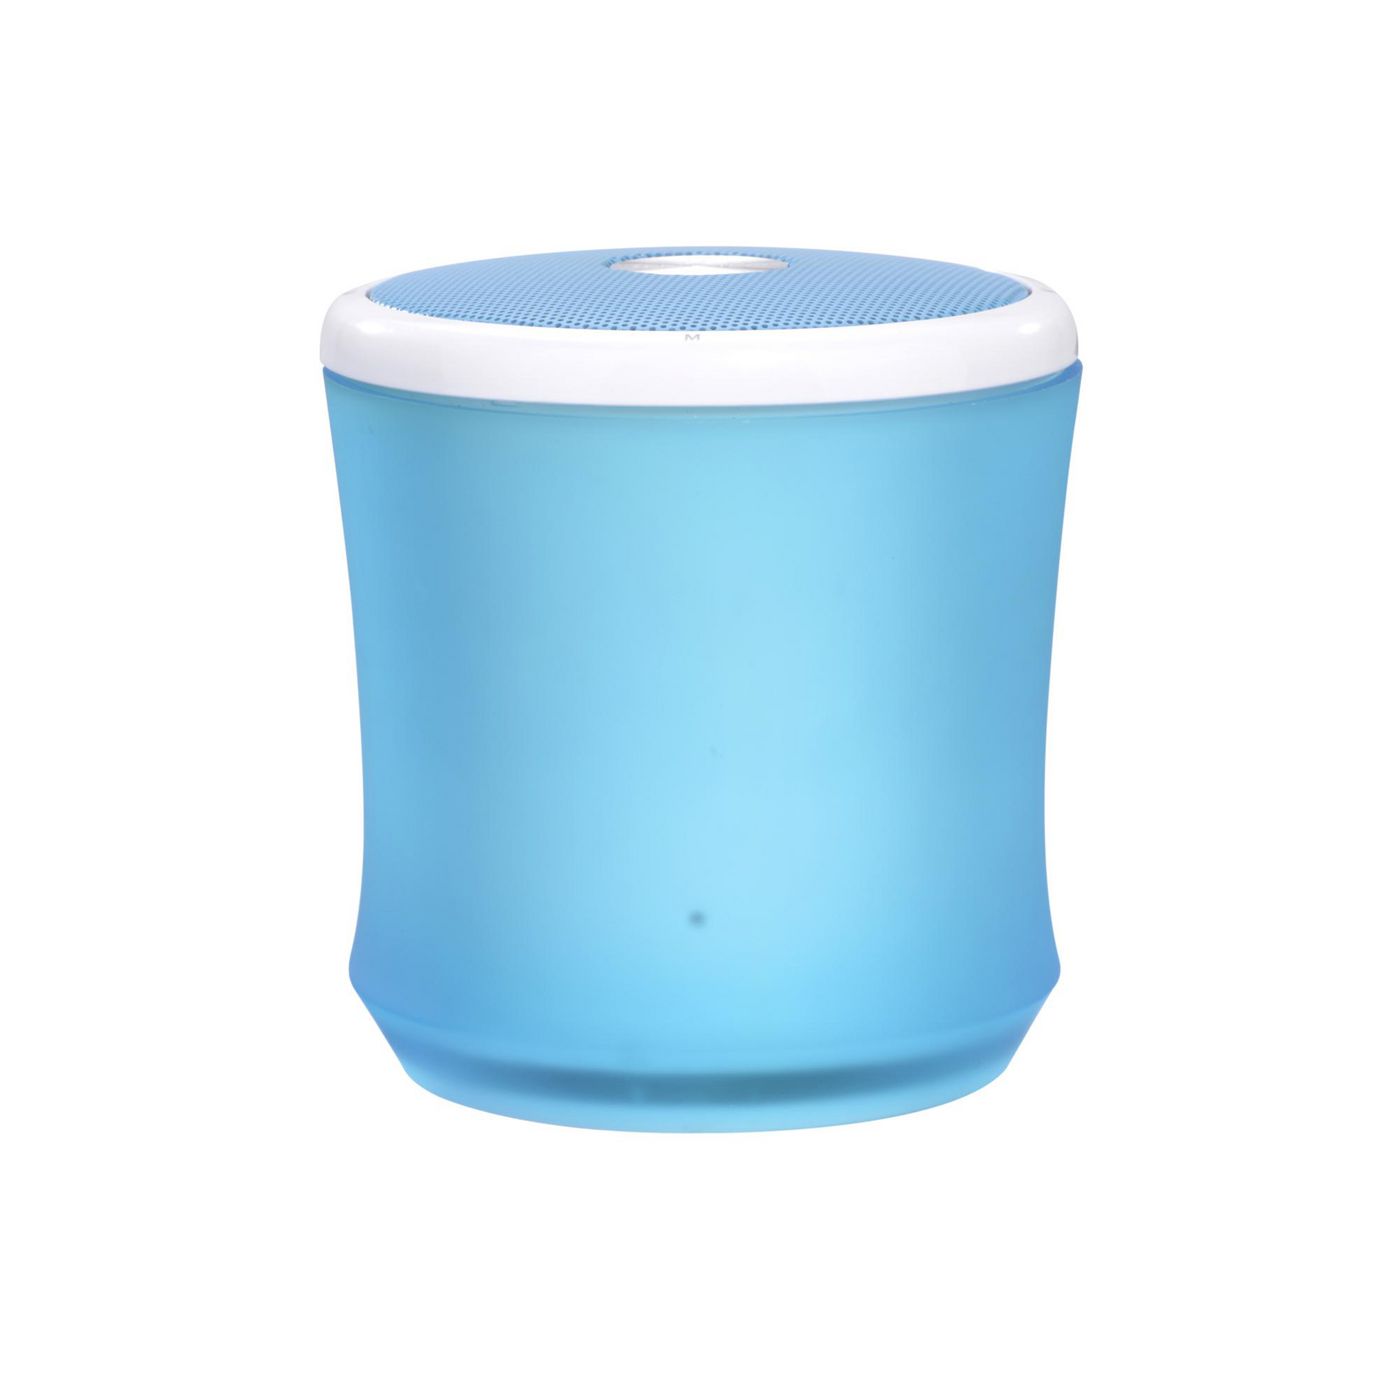 Terratec 145359 W128285263 Portable Speaker Blue 2.2 W 